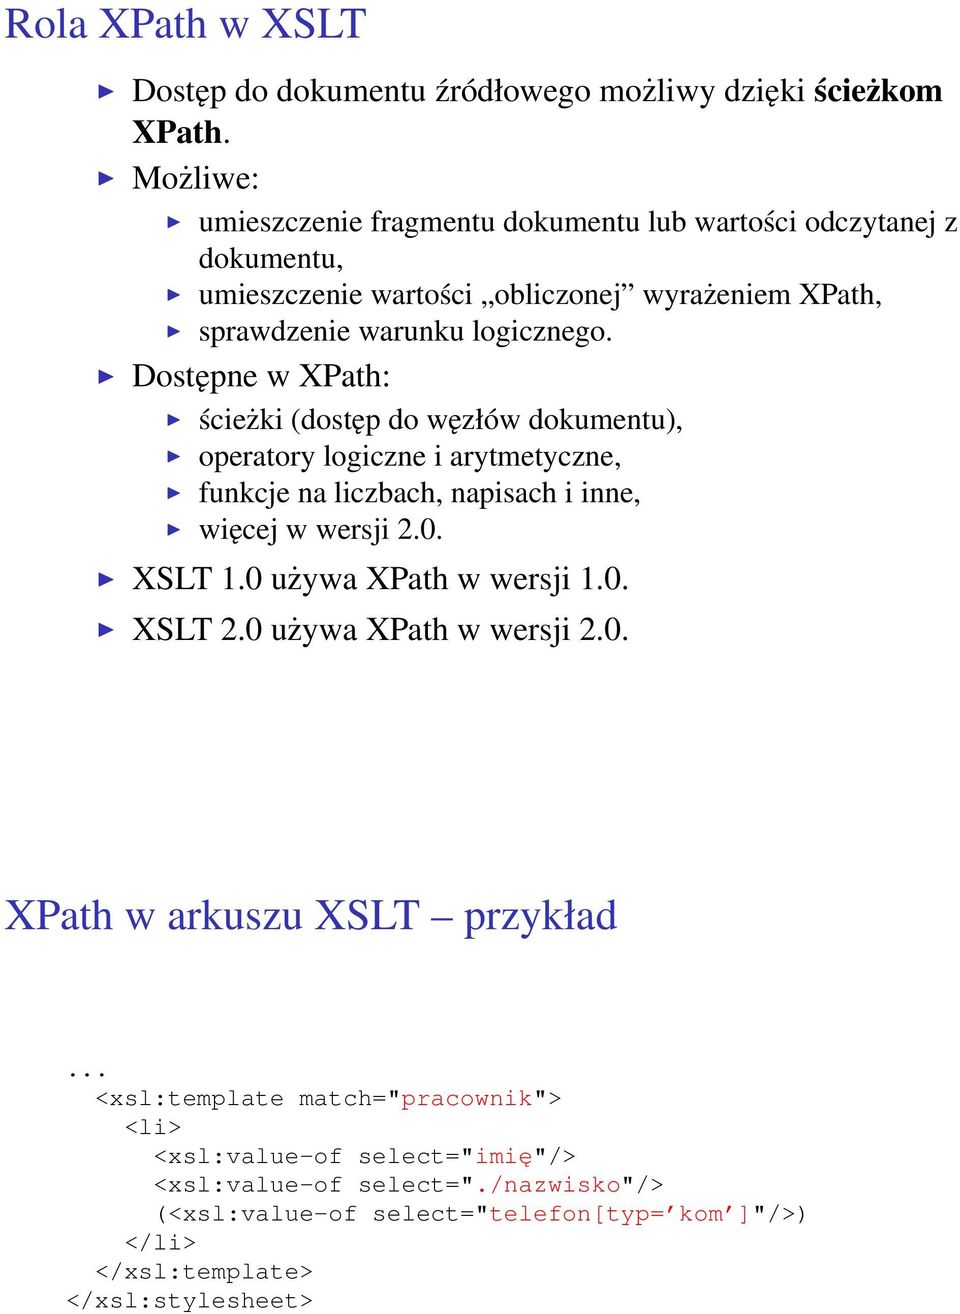 Dostępne w XPath: ścieżki (dostęp do węzłów dokumentu), operatory logiczne i arytmetyczne, funkcje na liczbach, napisach i inne, więcej w wersji 2.0. XSLT 1.